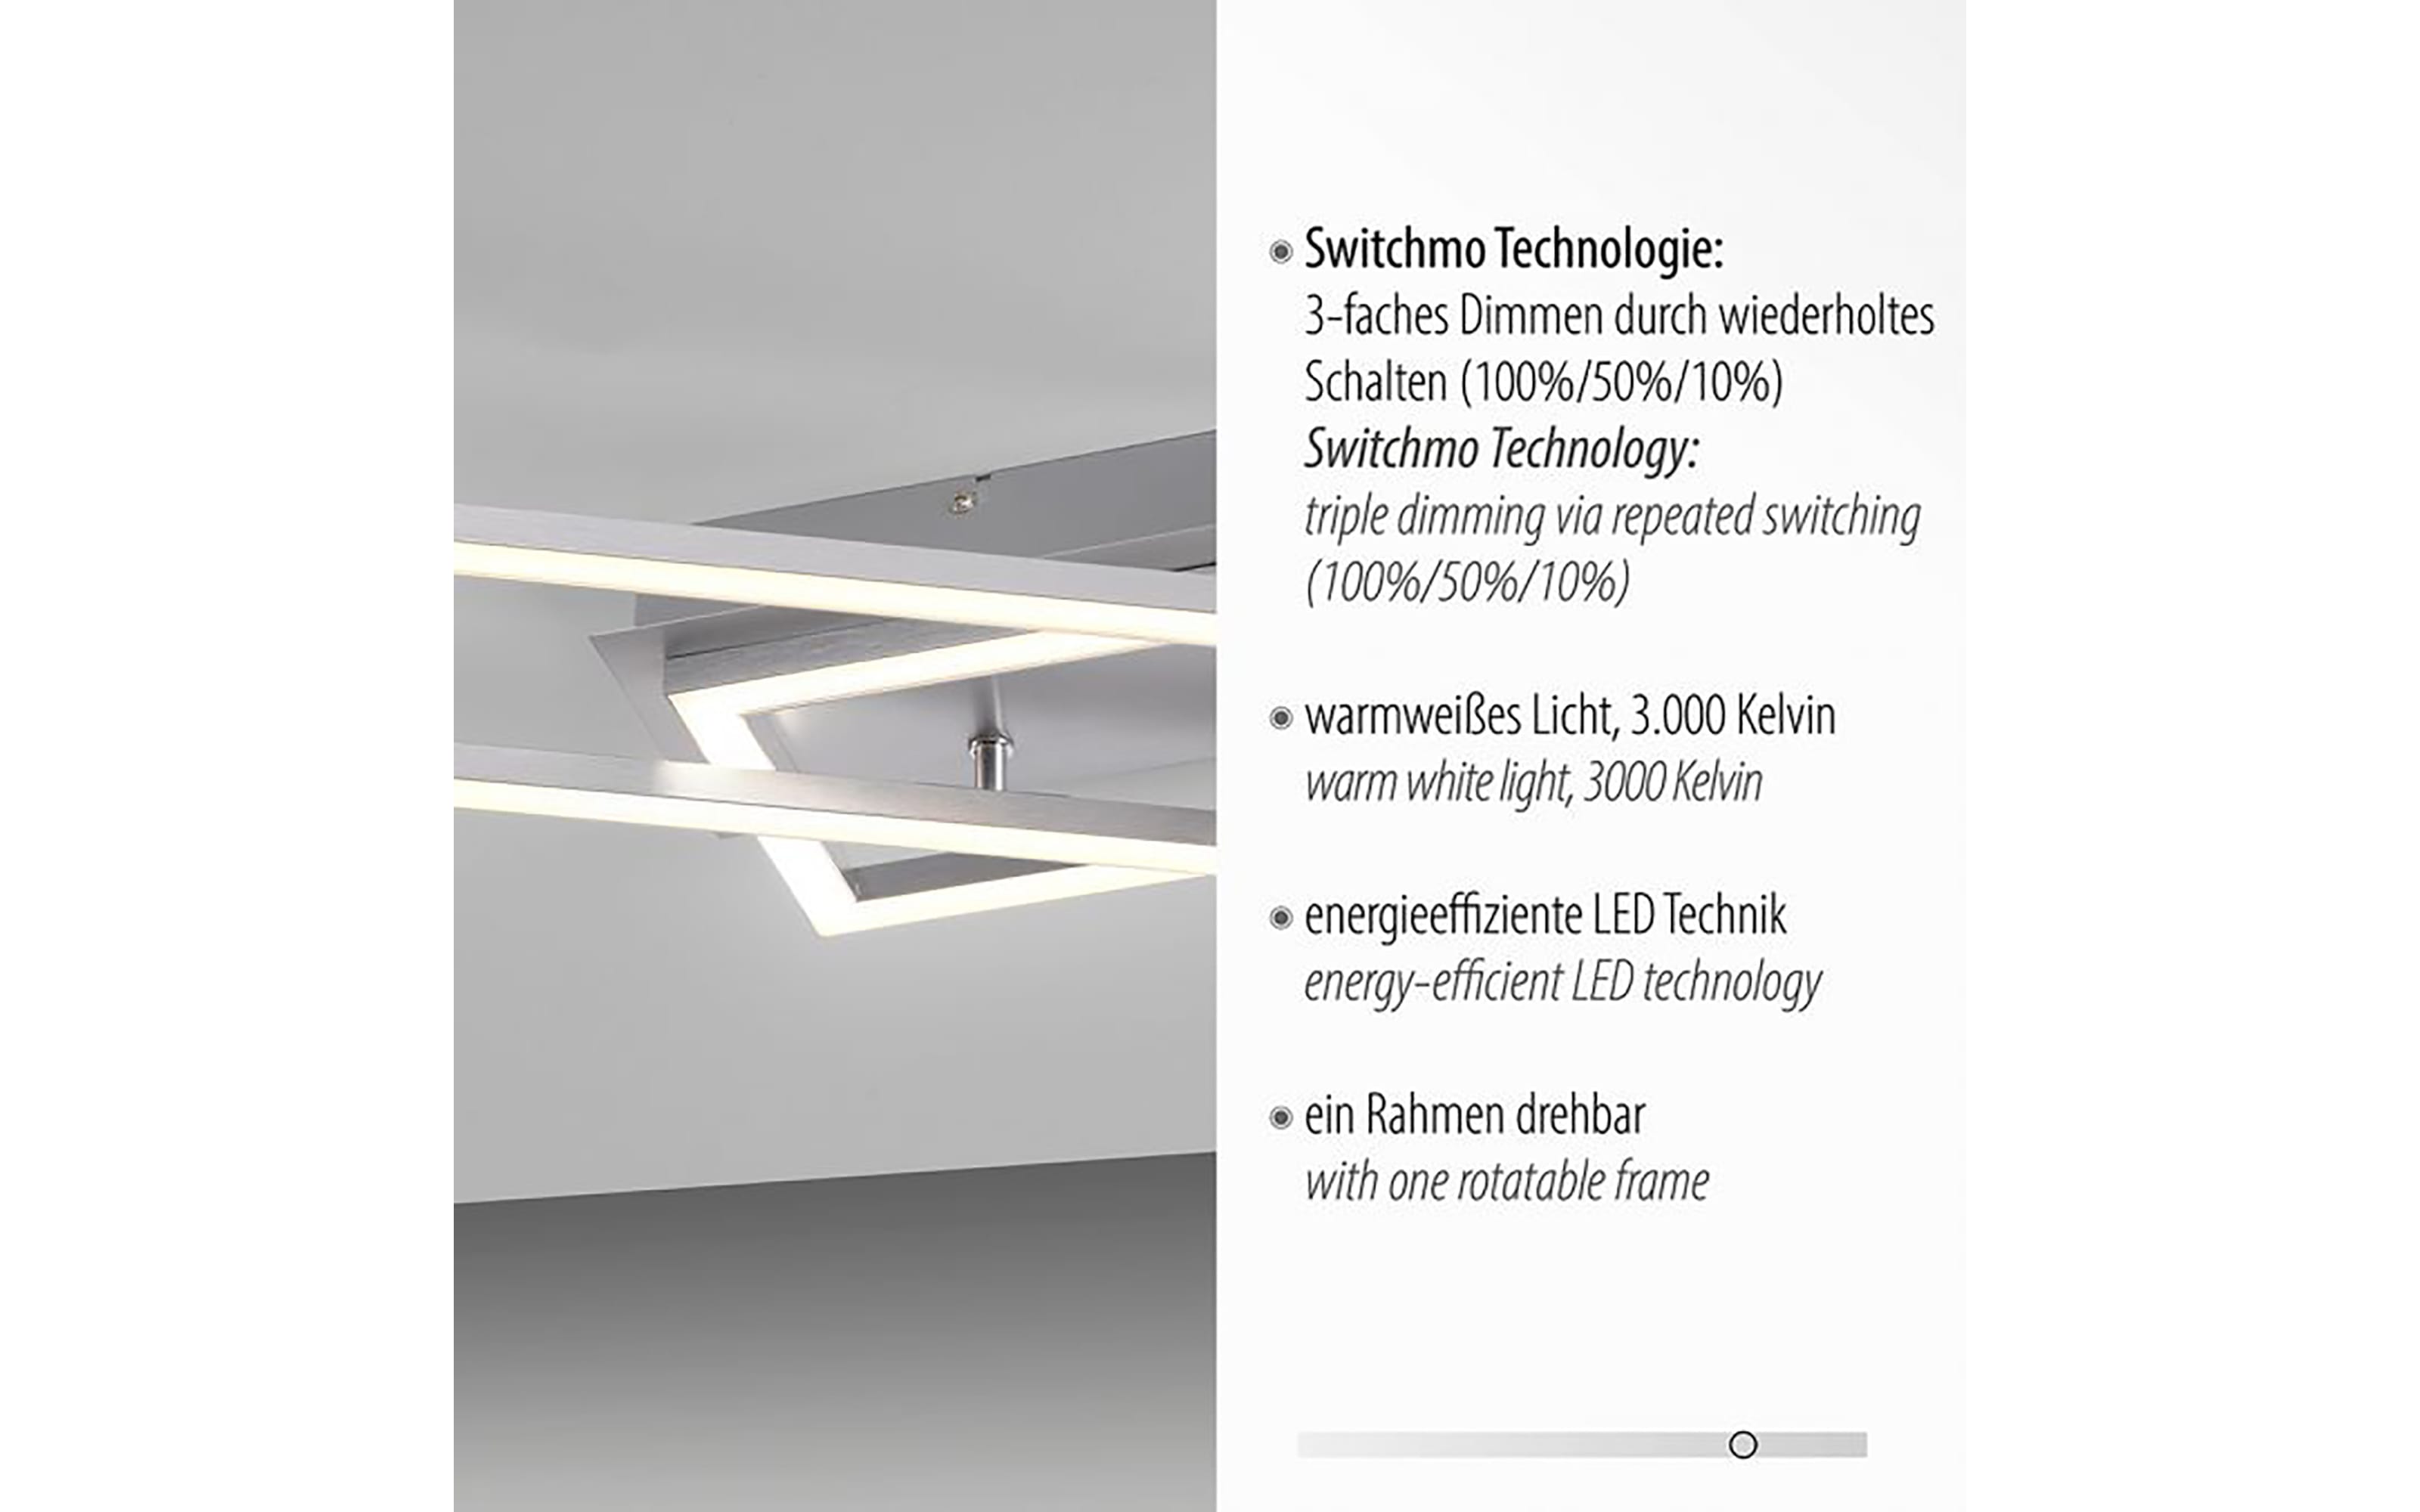 LED-Deckenleuchte Iven in stahlfarbig, 101 cm